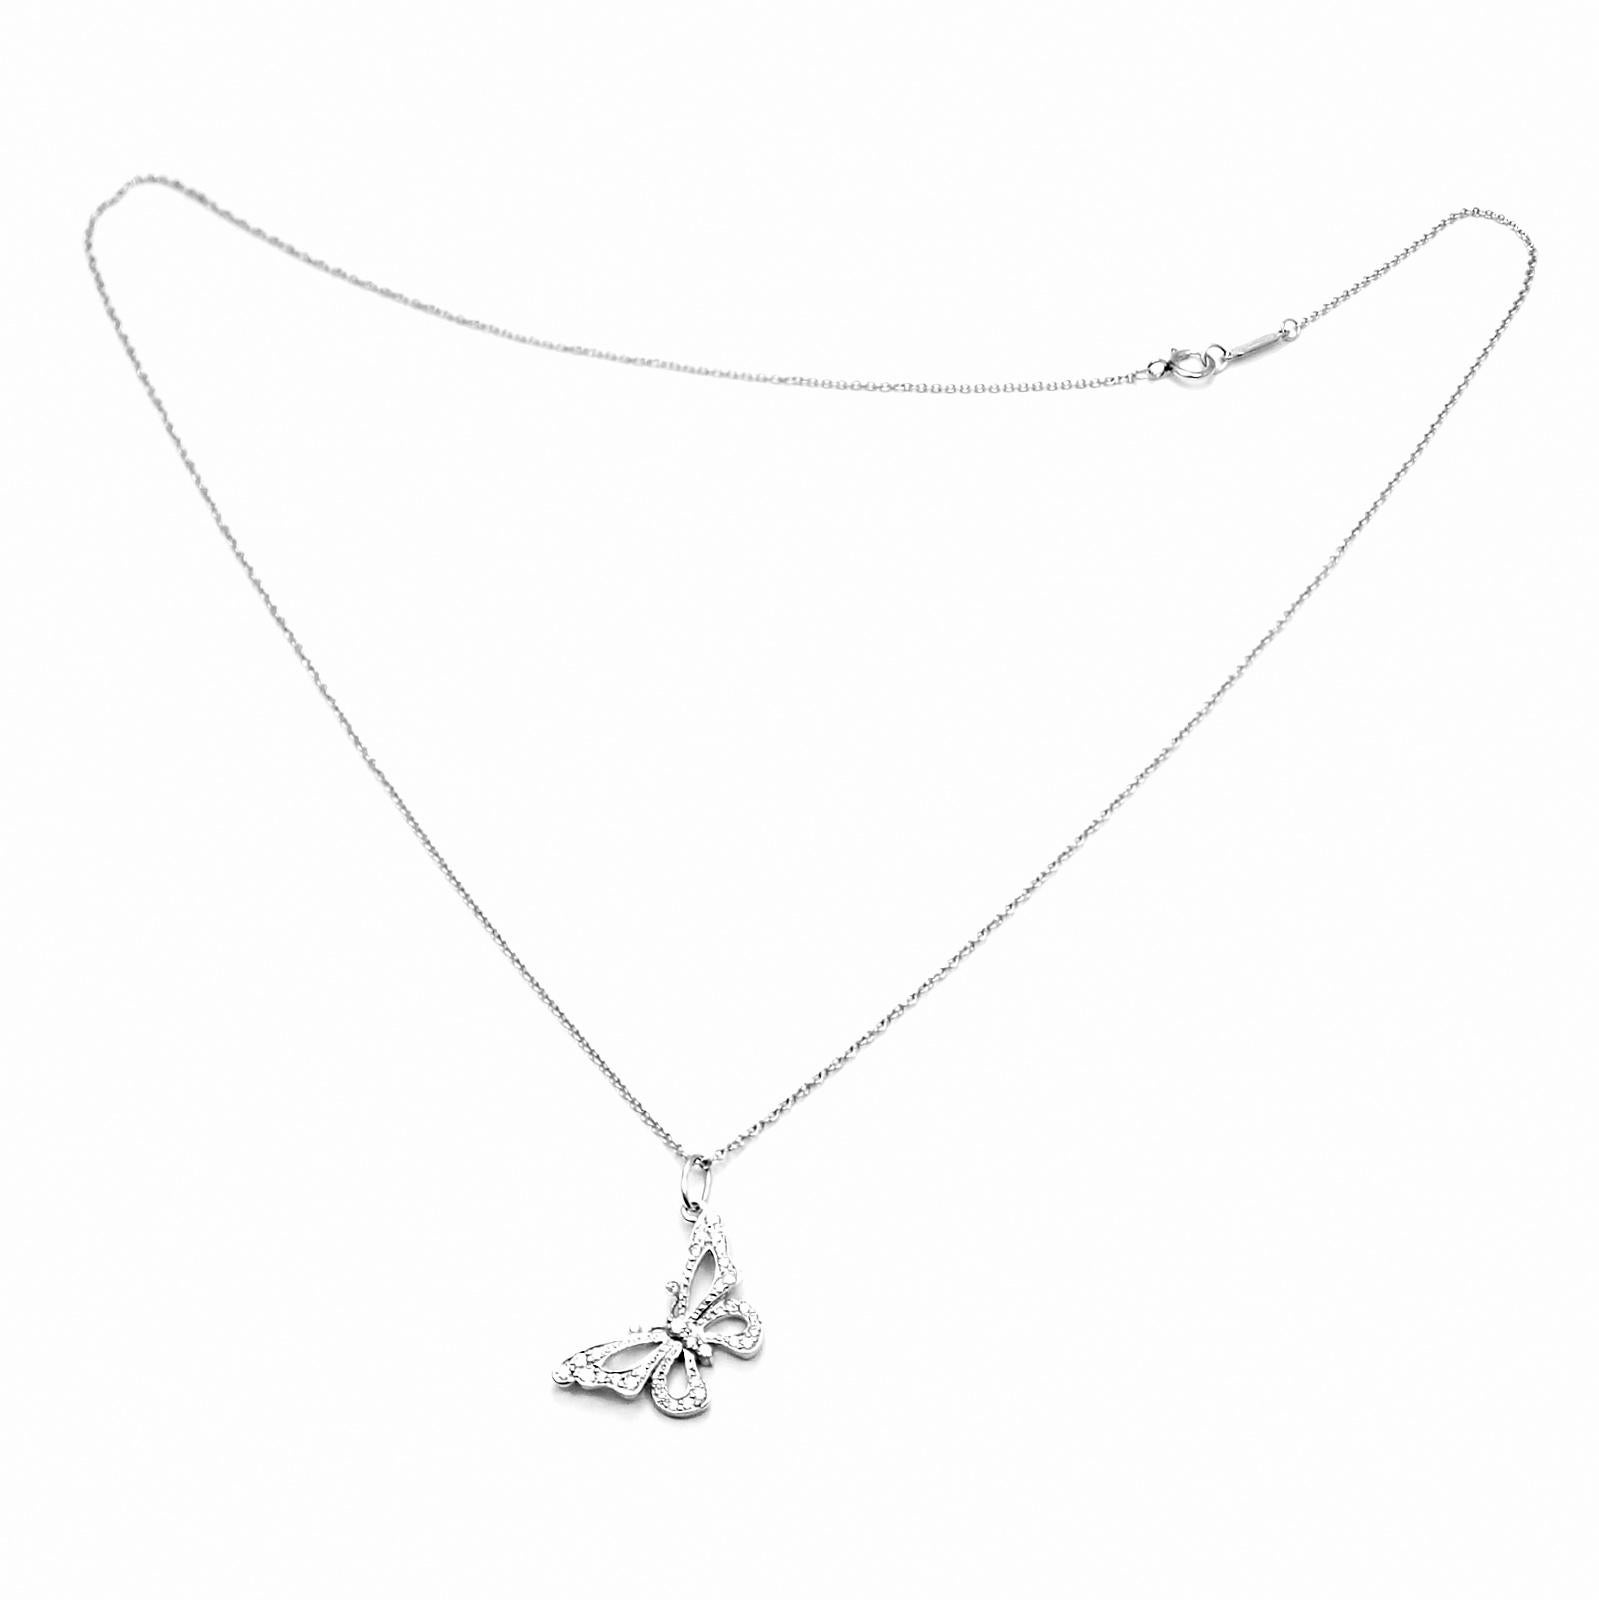 diamond butterfly necklace tiffany